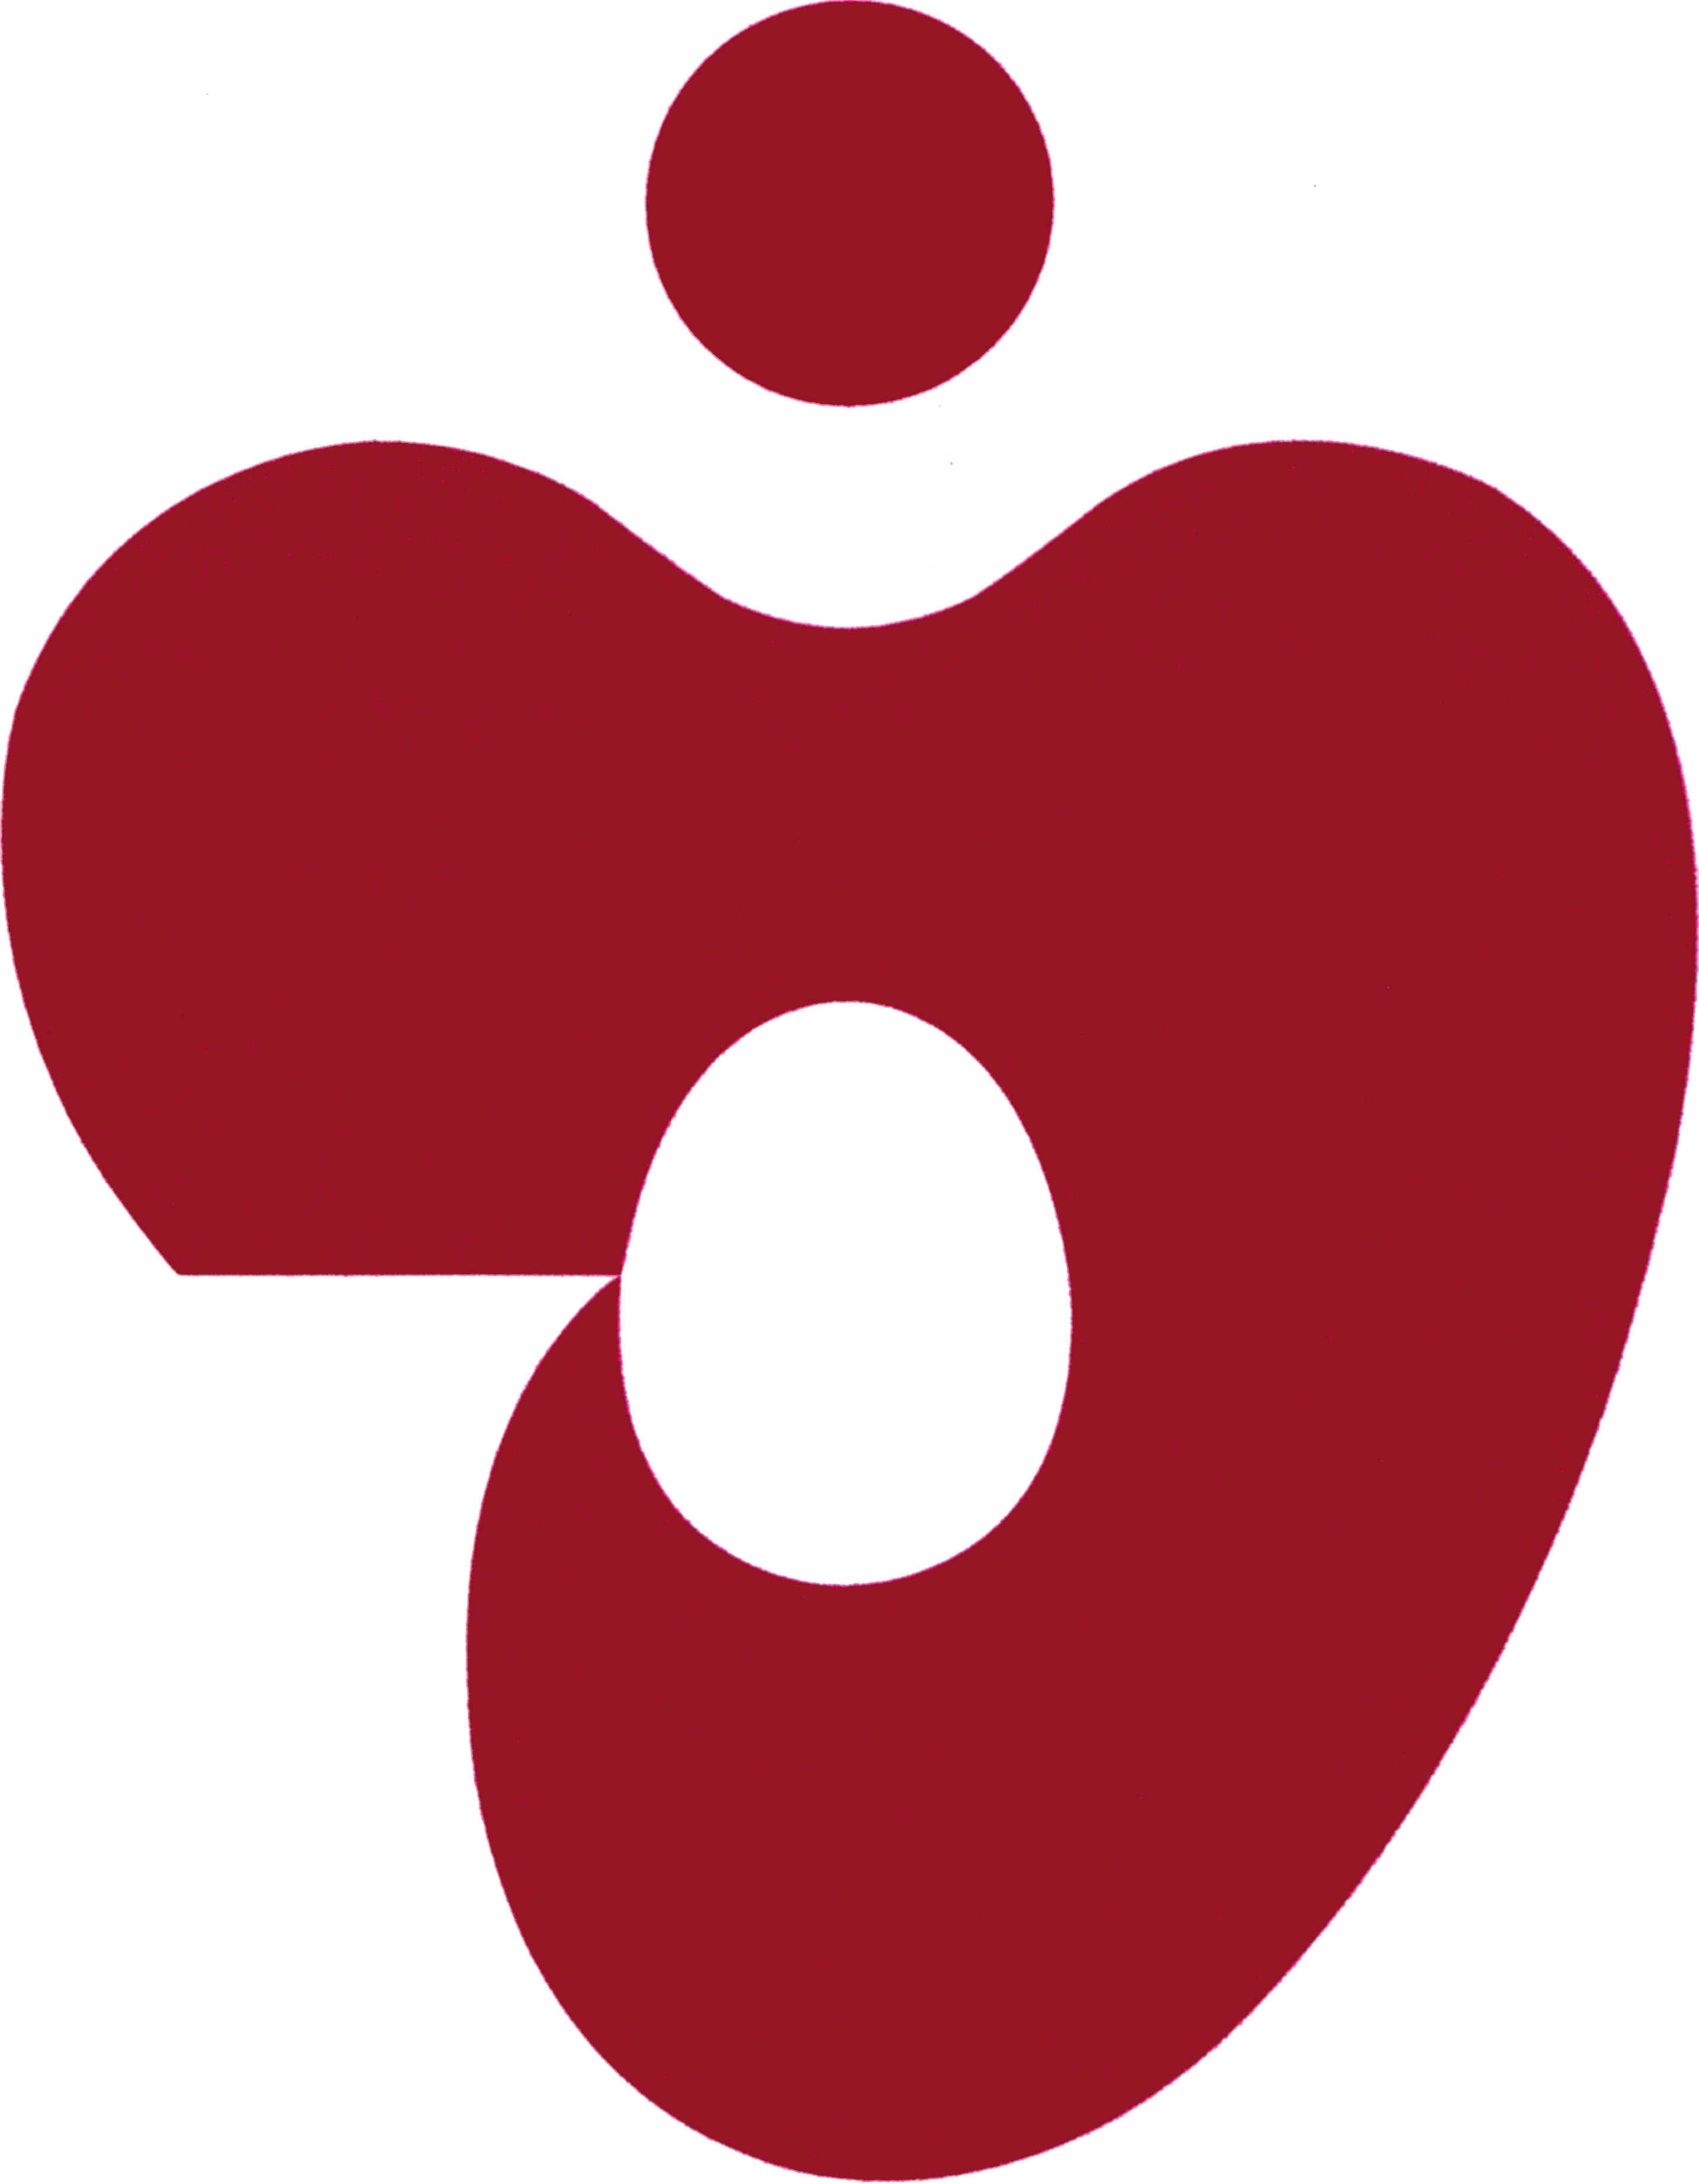 九州看護福祉大学ロゴ